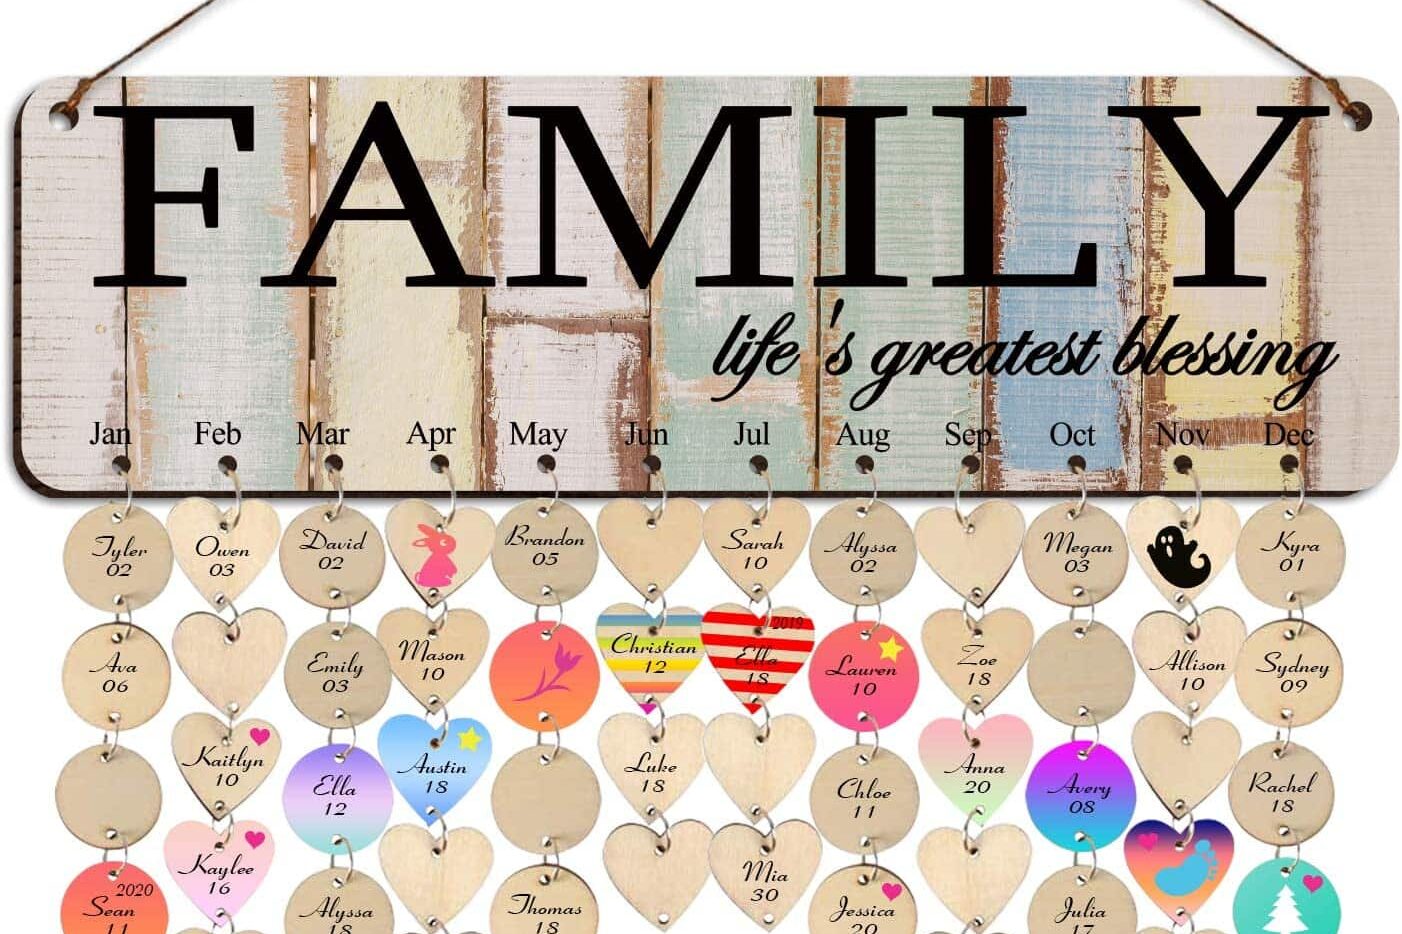 Family birthday calendar gift idea for Grandma on Grandparent's Day. | The Dating Divas